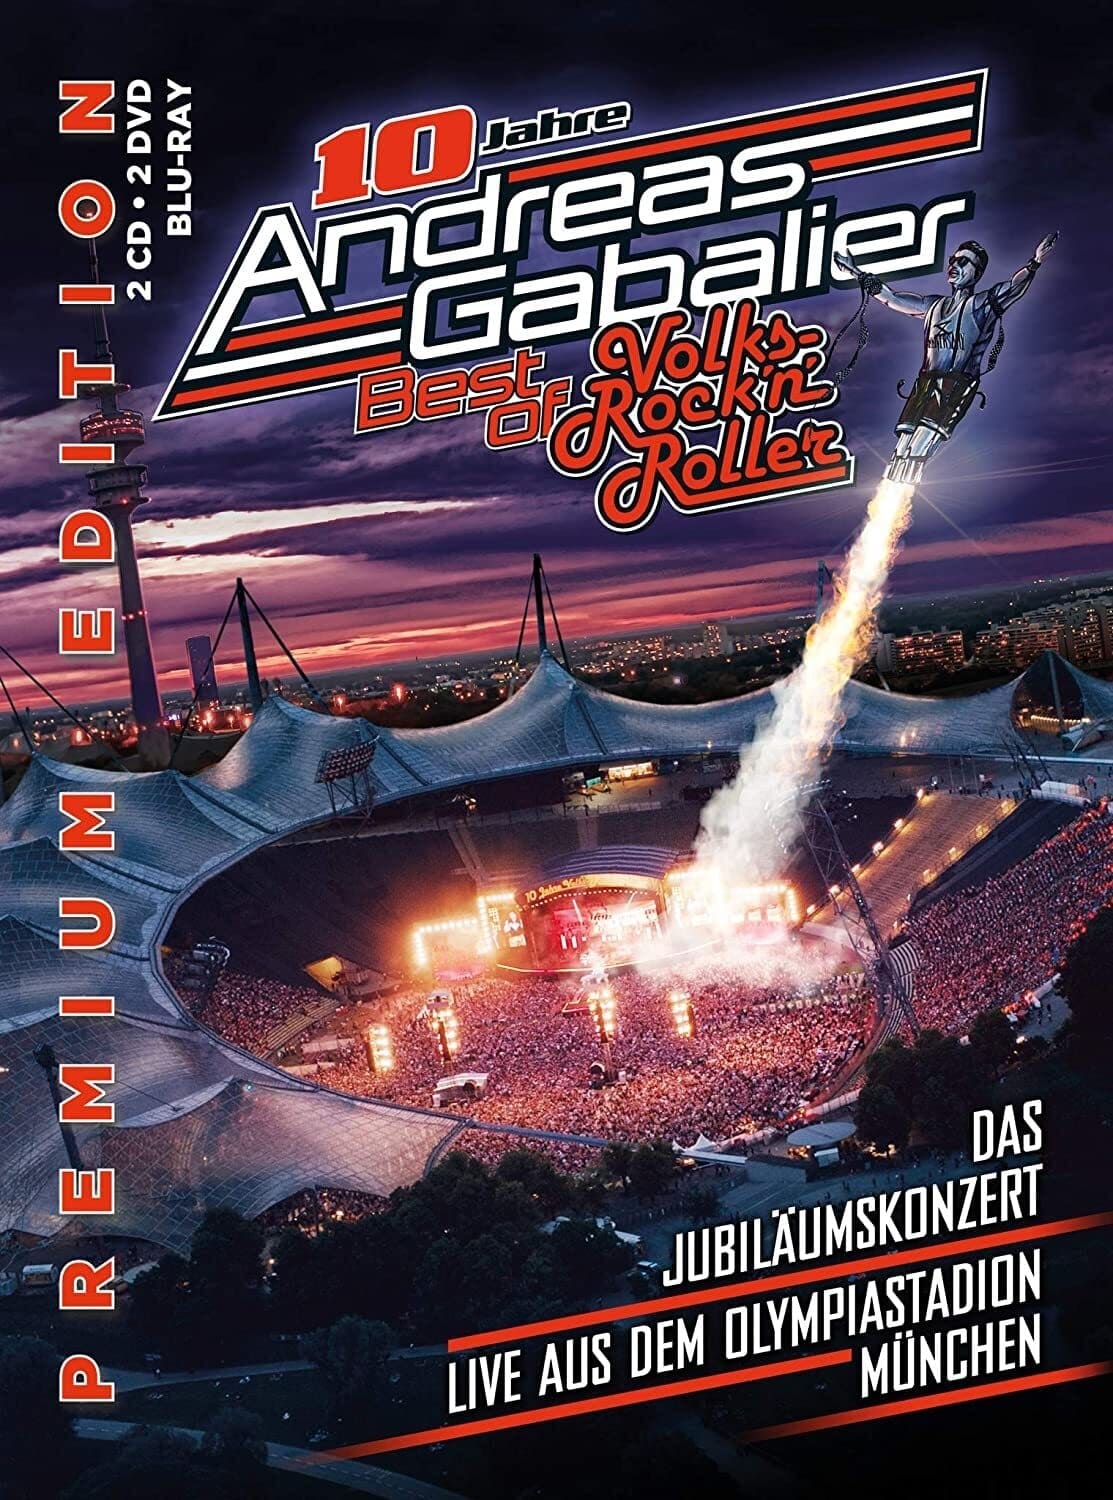 Andreas Gabalier - Best of Volks-Rock'n'Roller - Das Jubiläumskonzert live aus dem Olympiastadion in München